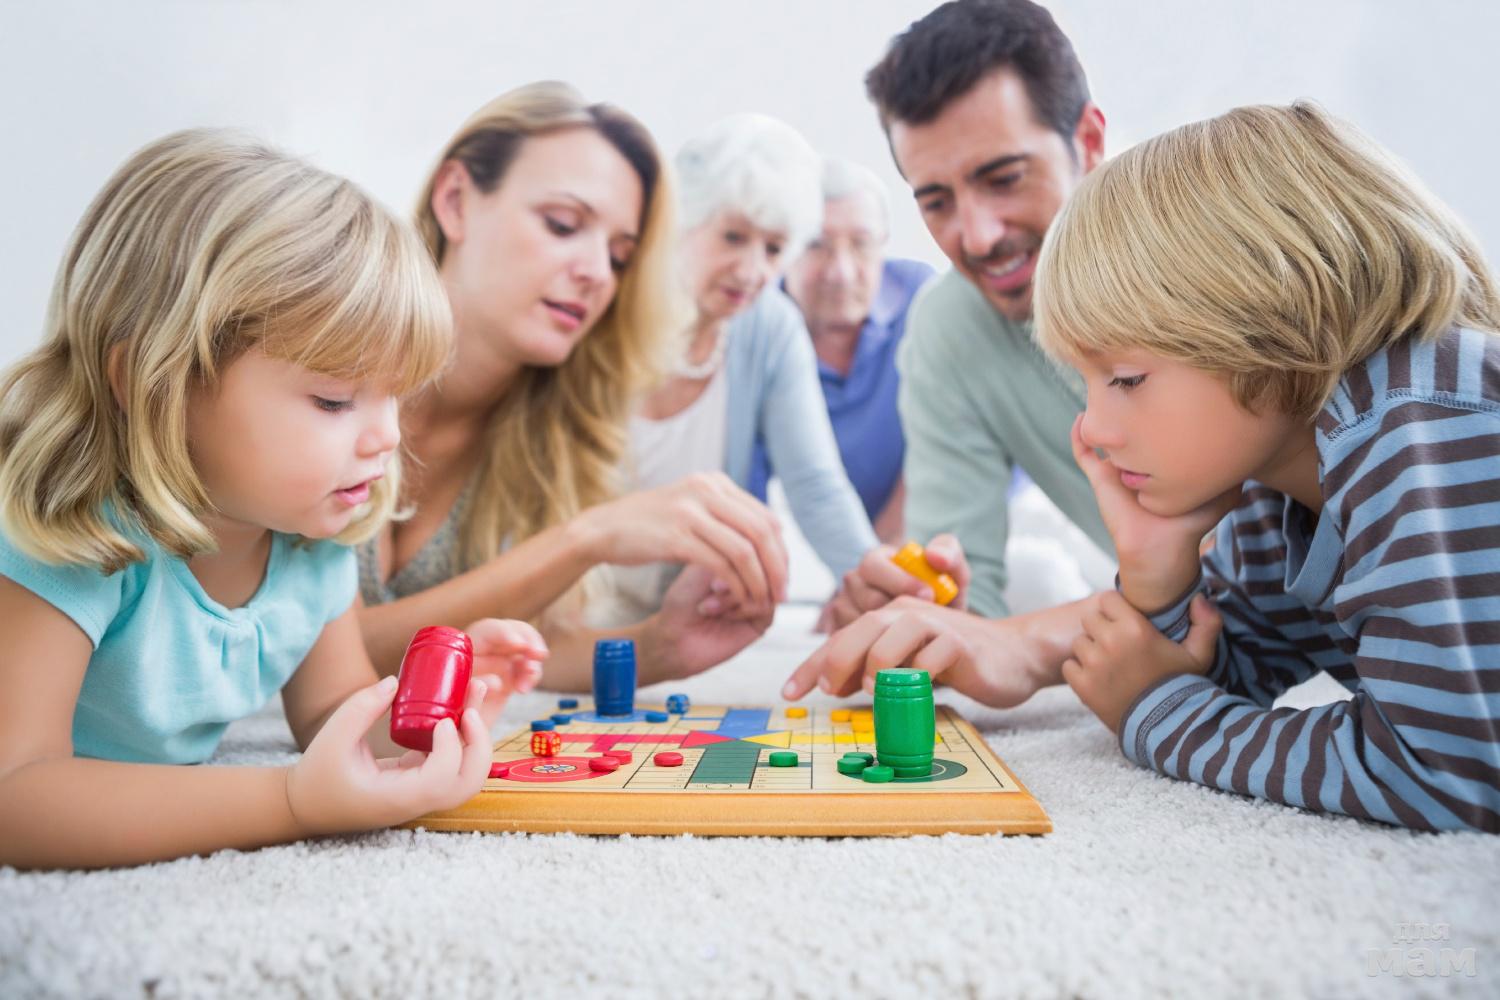 Игры и упражнения для развития речи у детей 1-2 лет